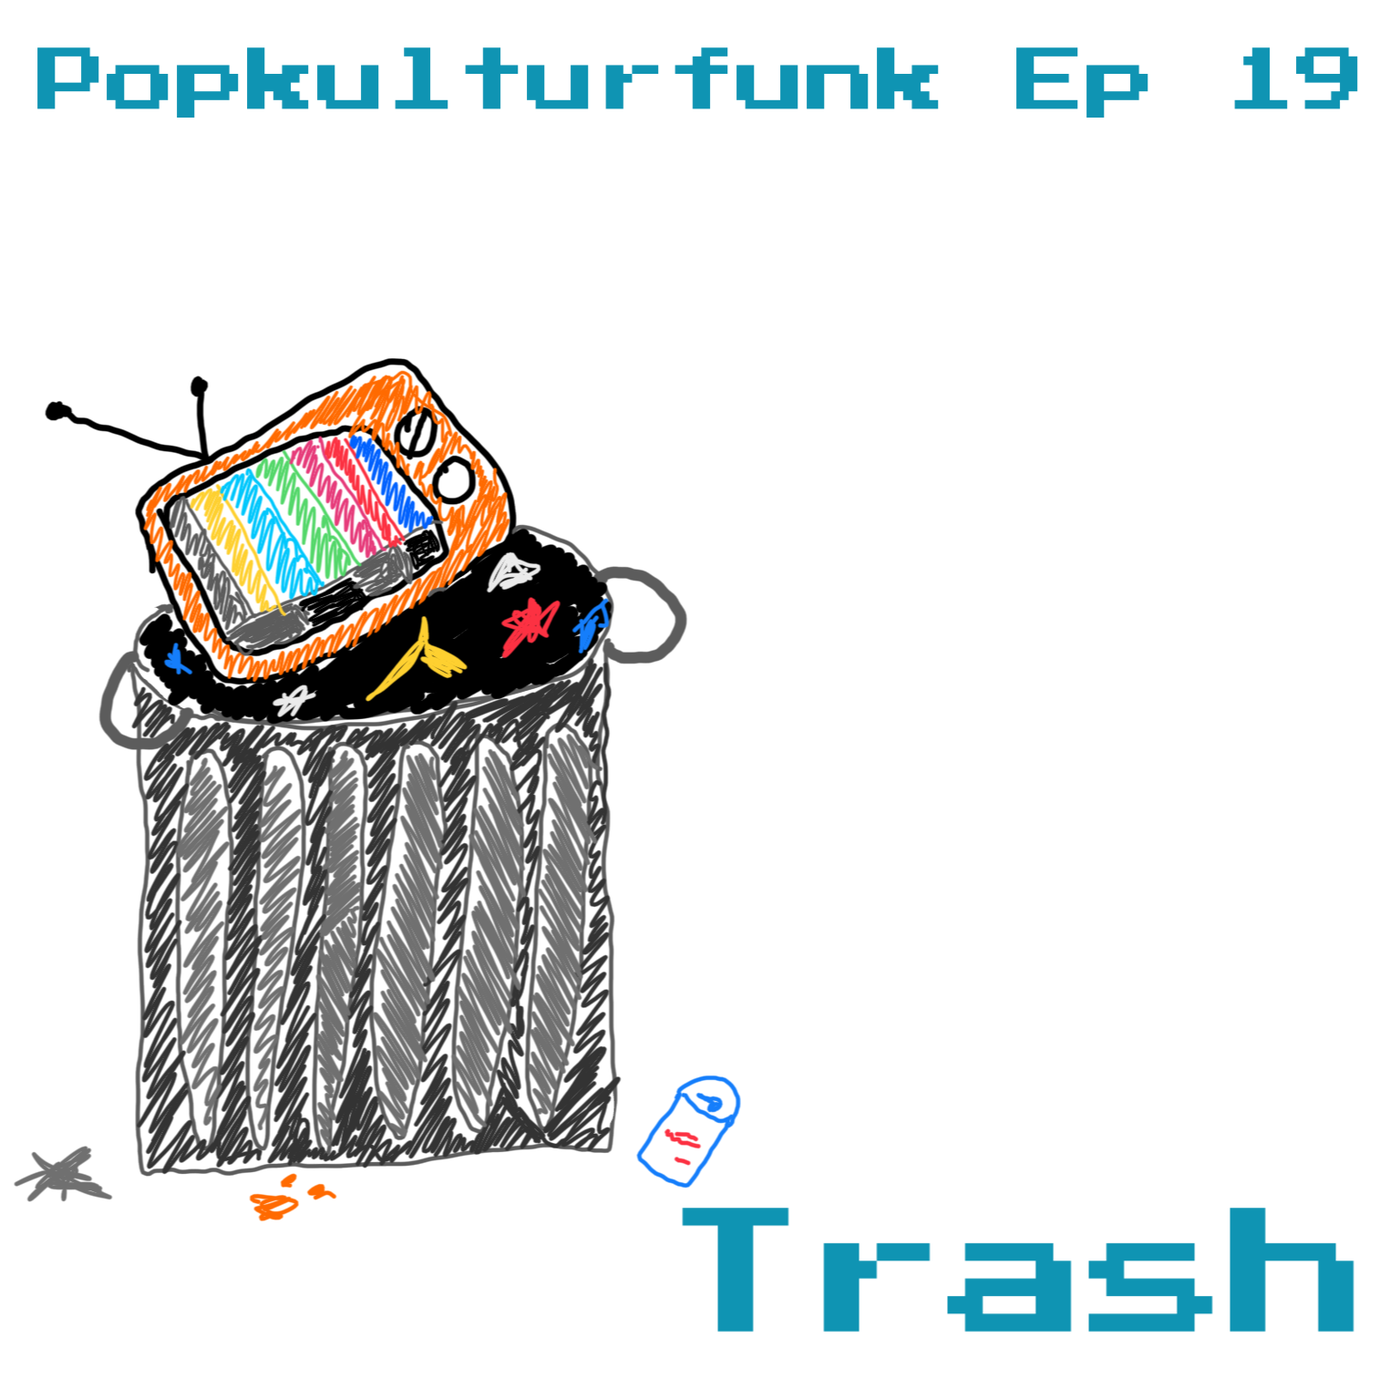 Episode 19: Trash